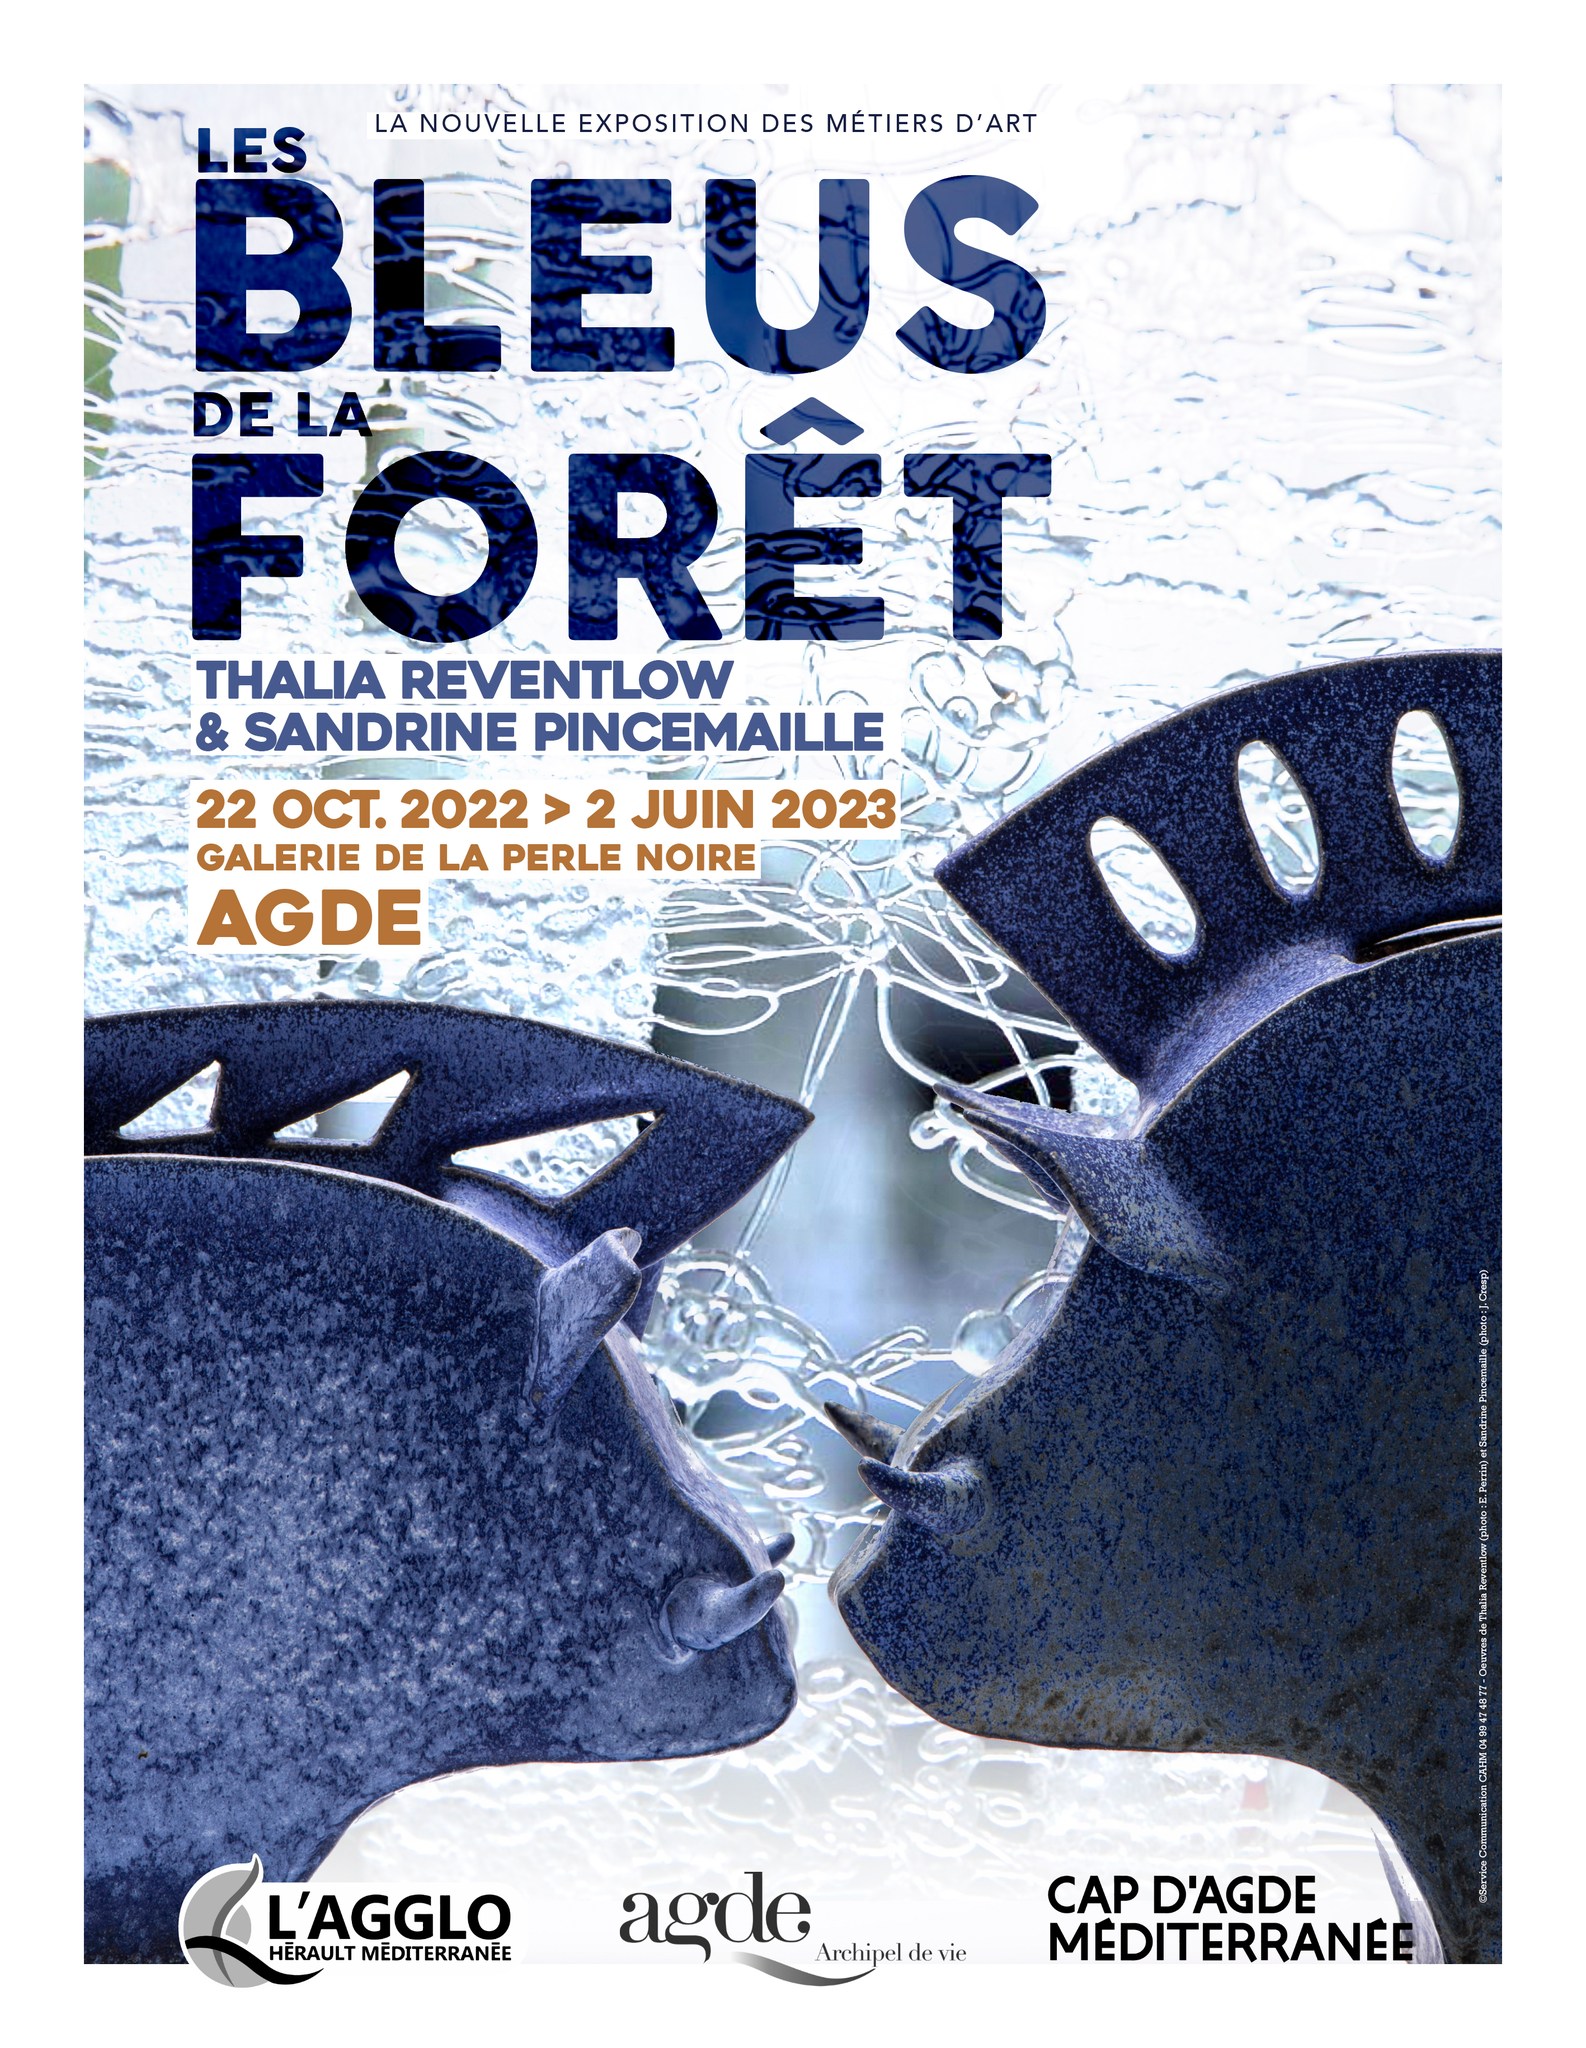 Hérault - Nouvelle Exosition   Les Bleus dans la fôret    Le vernissage de l'exposition aura lieu le vendredi 21 octobre